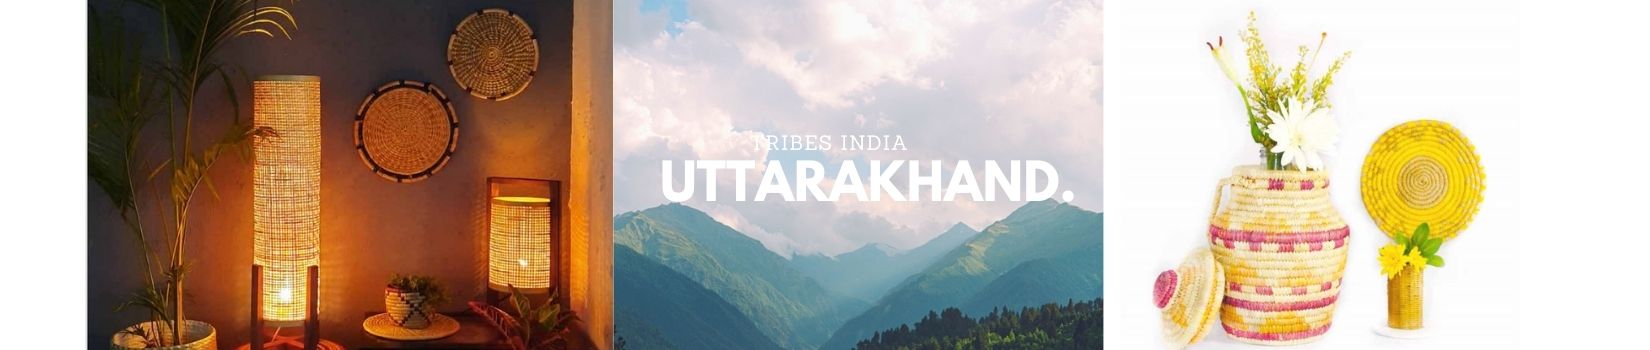 Tribes India Uttarakhand